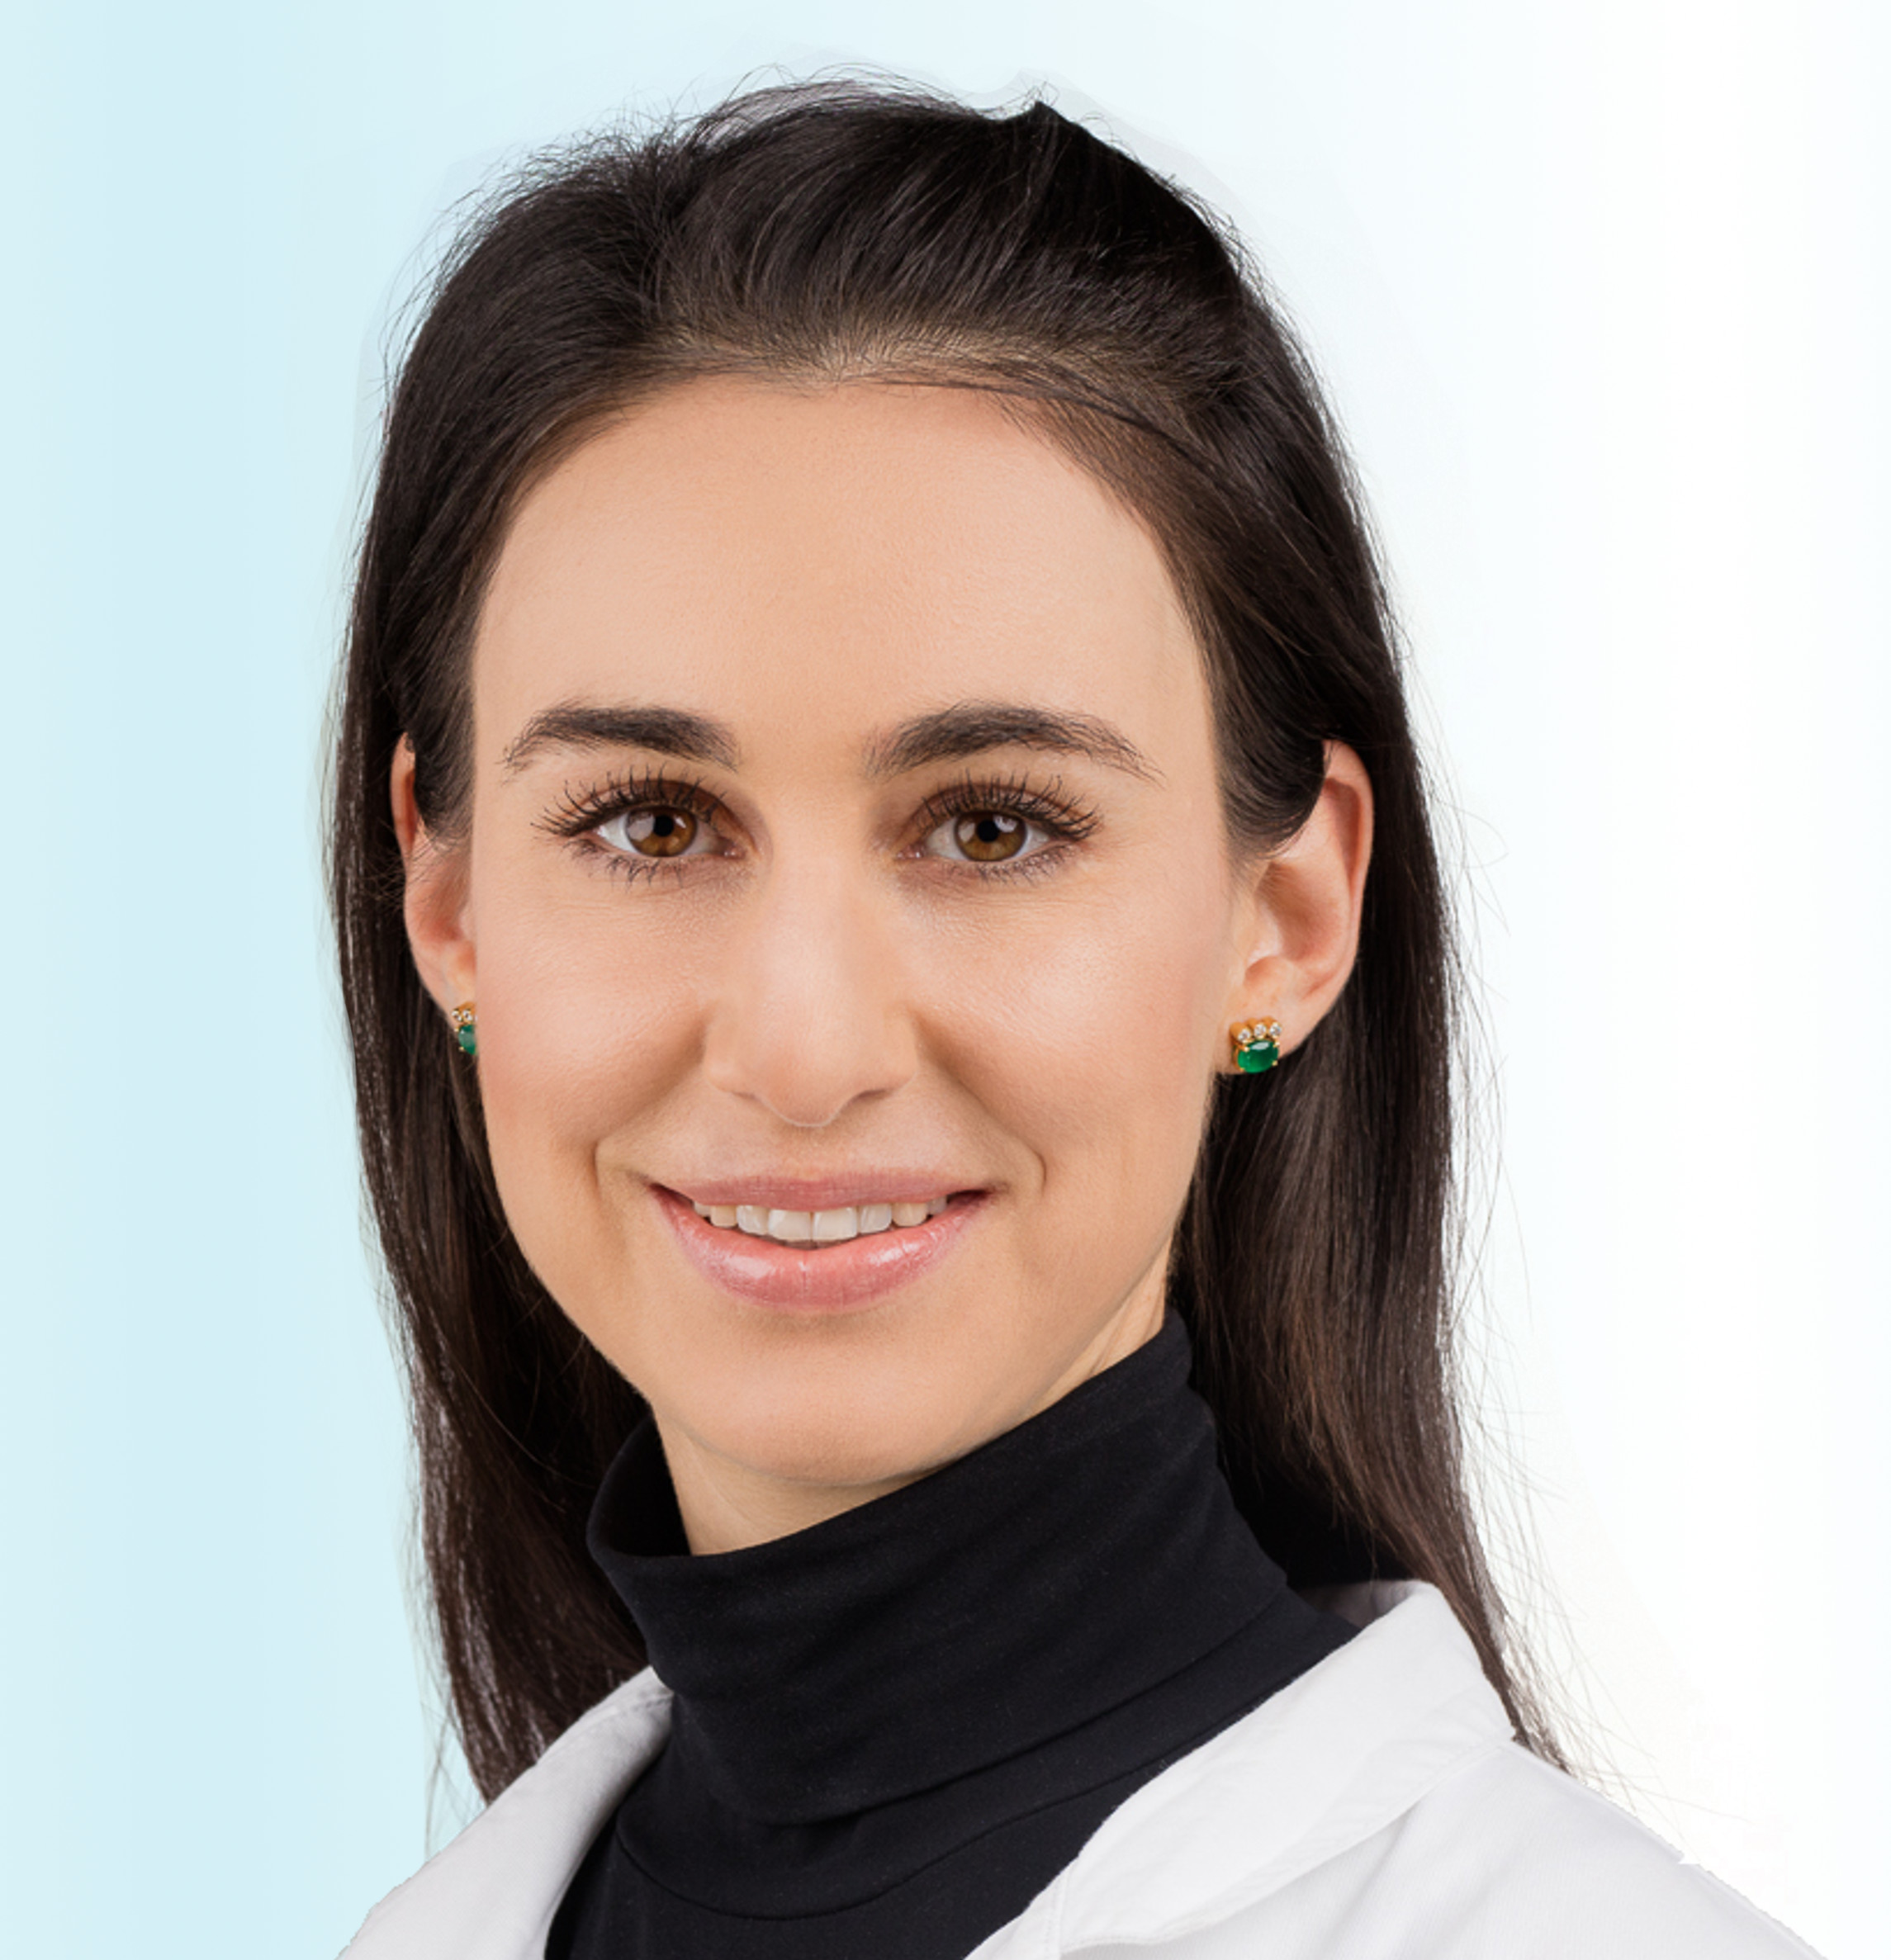 Dermatologue, Dr. med. Valentina Bänninger